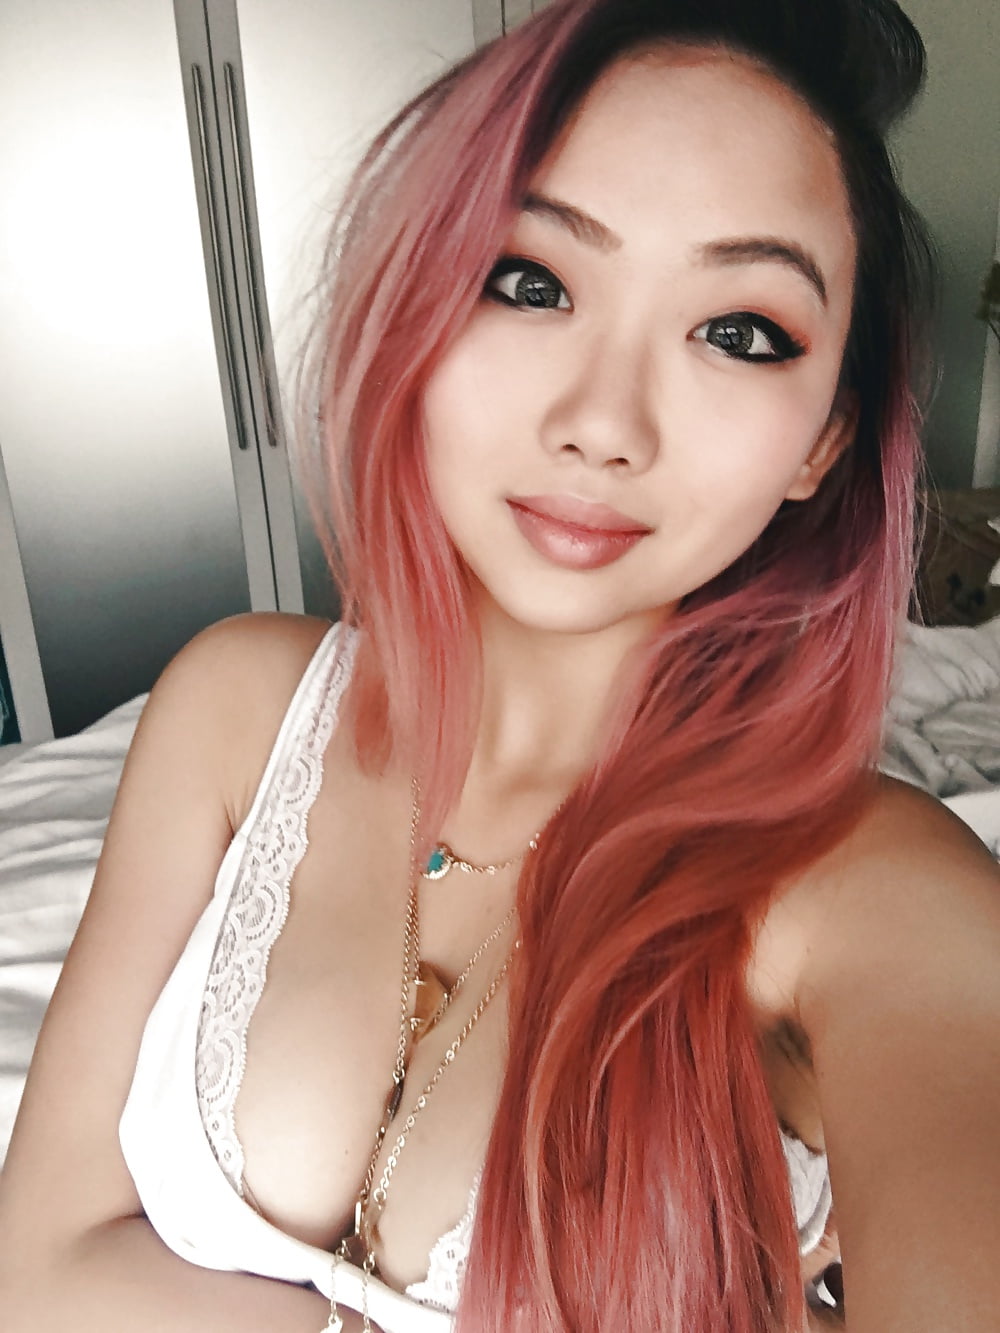 Sex Gallery Asian Nerdy Teen Slut aka HarrietSugarcookie Selfies